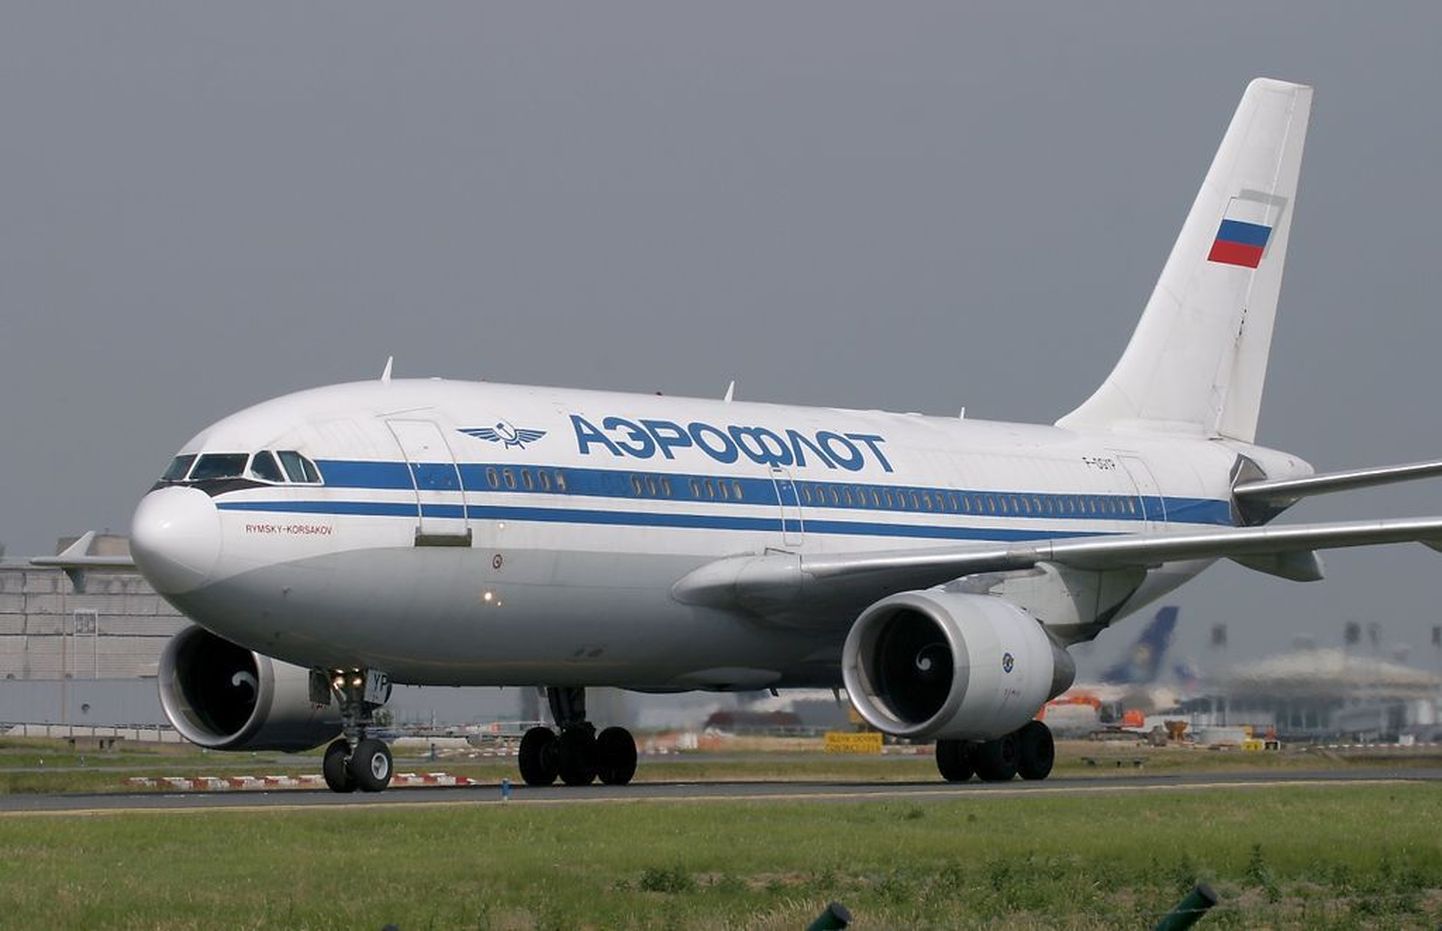 Õnnetusse sattunud lennuk veel Aerofloti valduses